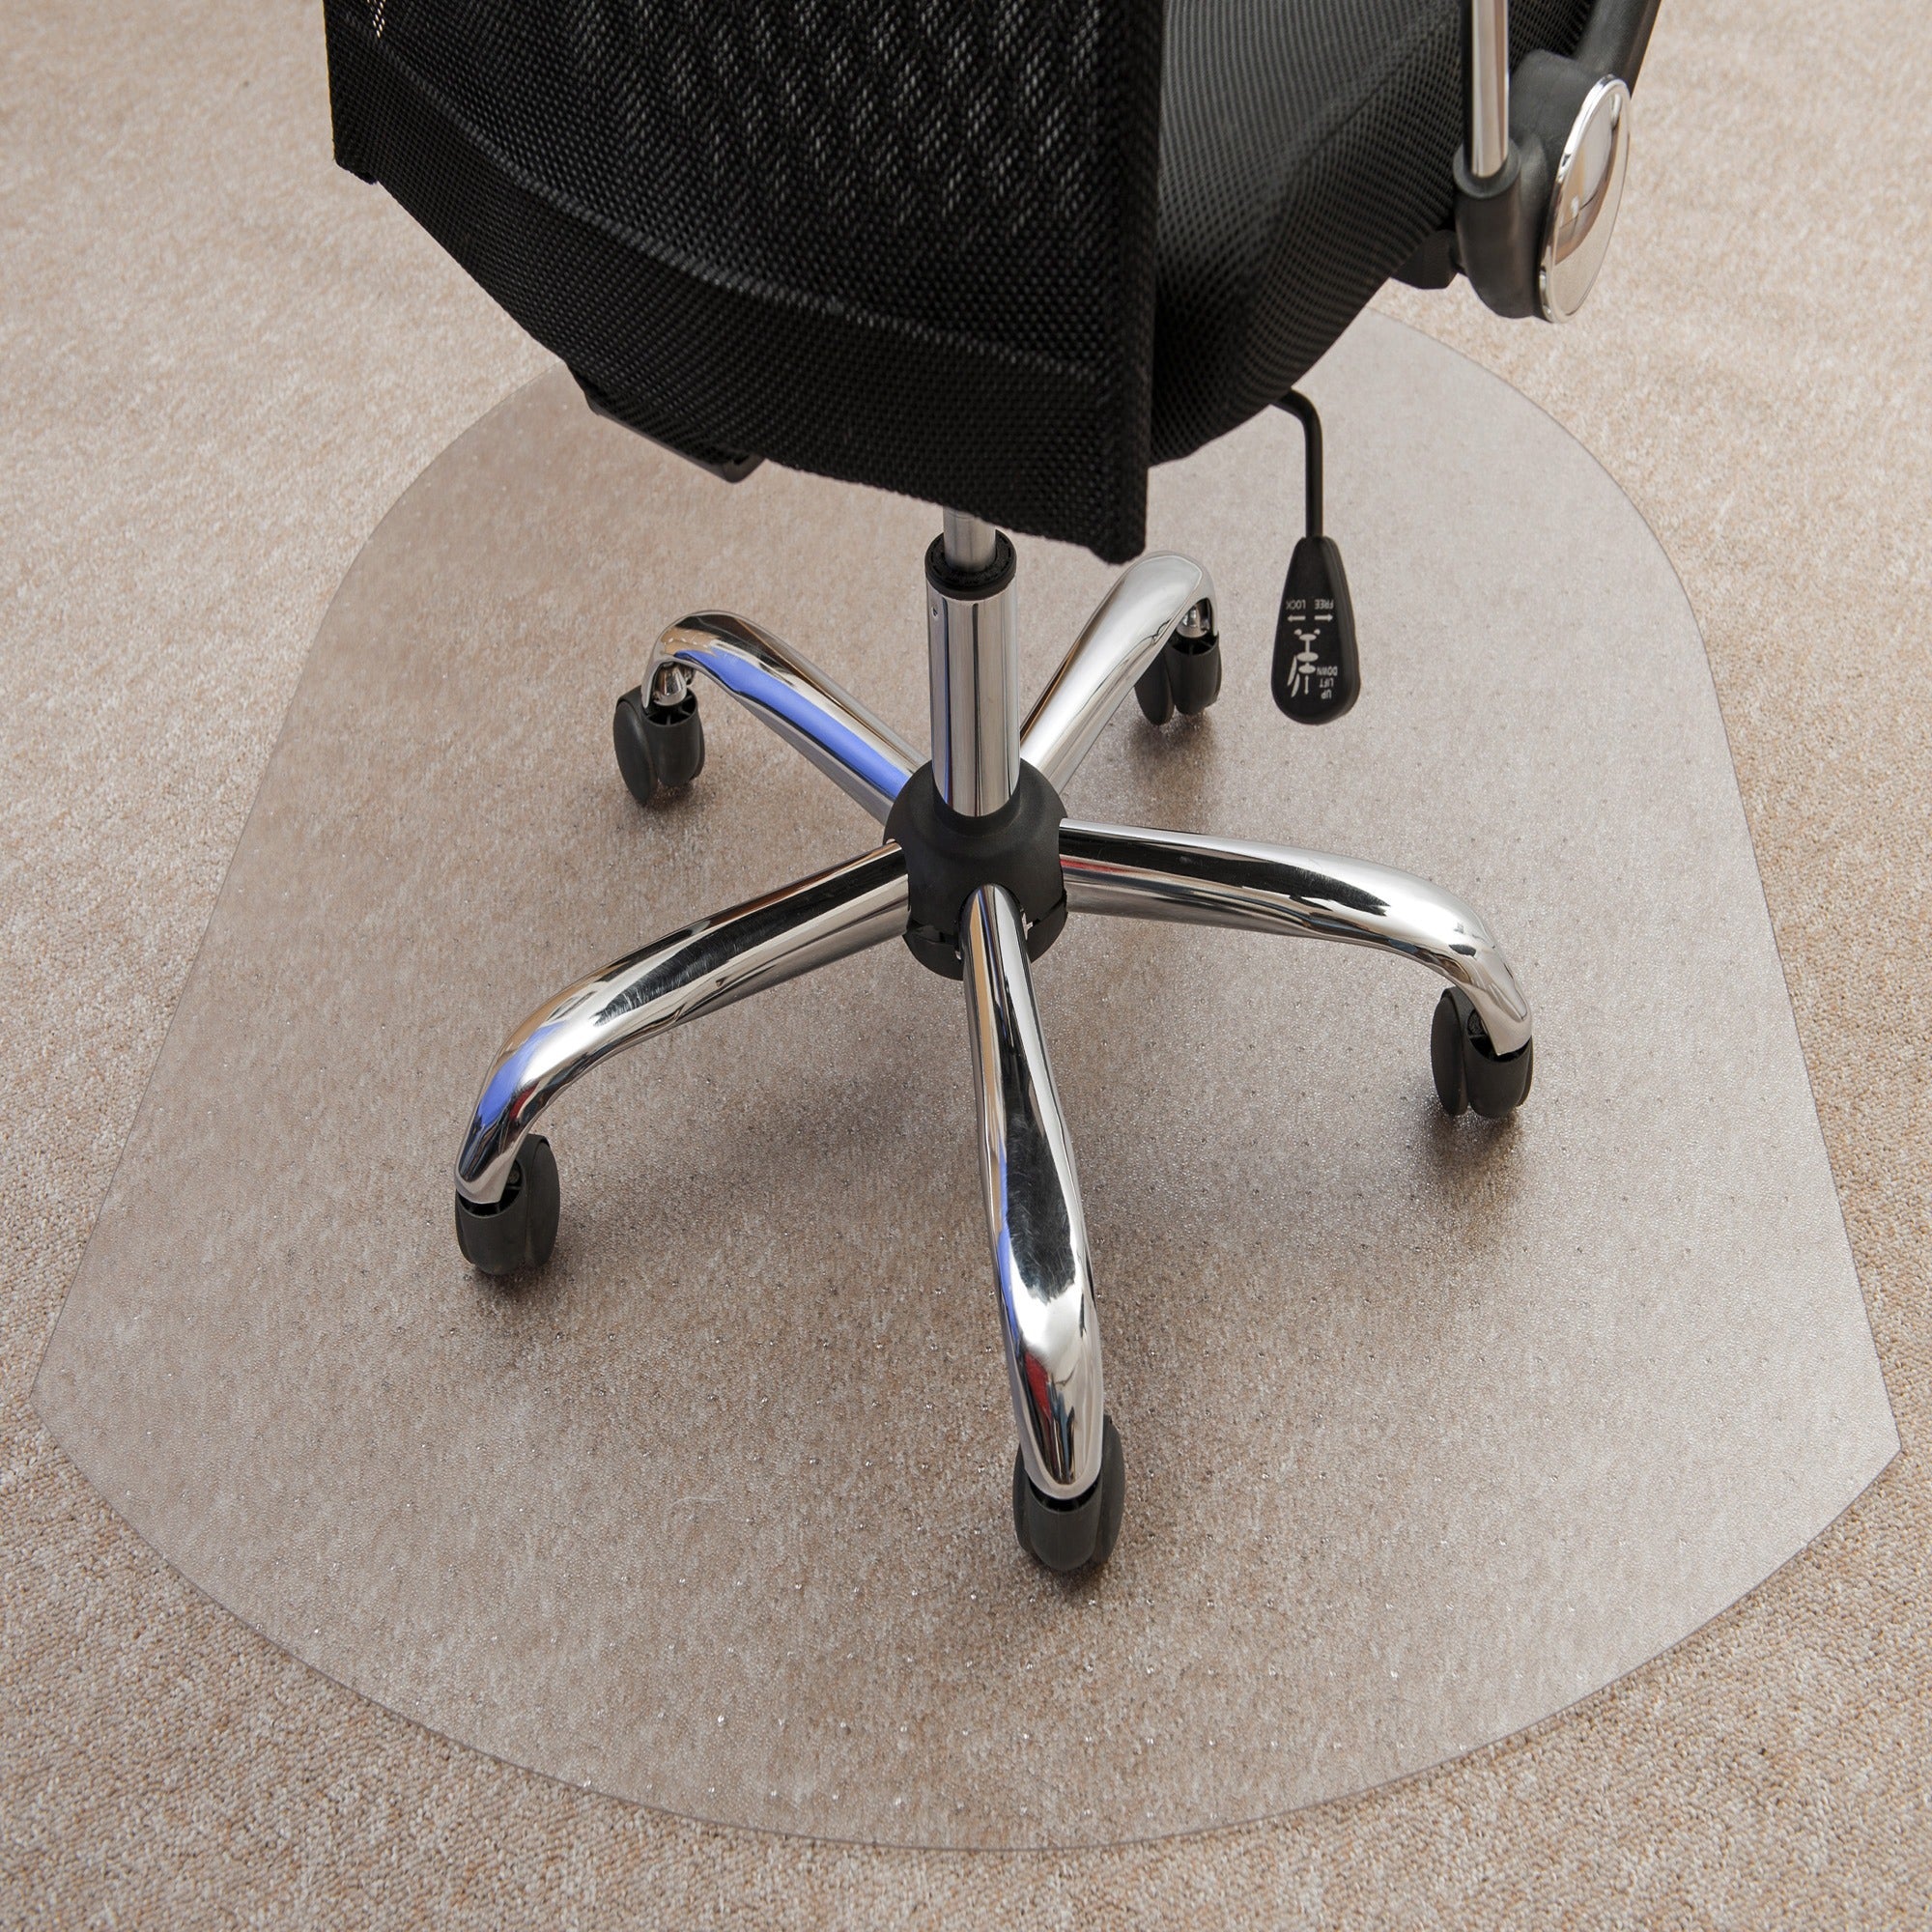 Ultimat Polycarbonate Contoured Chair Mat for Carpets up to 1/2" - 39 x 49" - Clear Contoured Polycarbonate Chair Mat For Carpets - 49" L x 39" W x 0.085" D - 